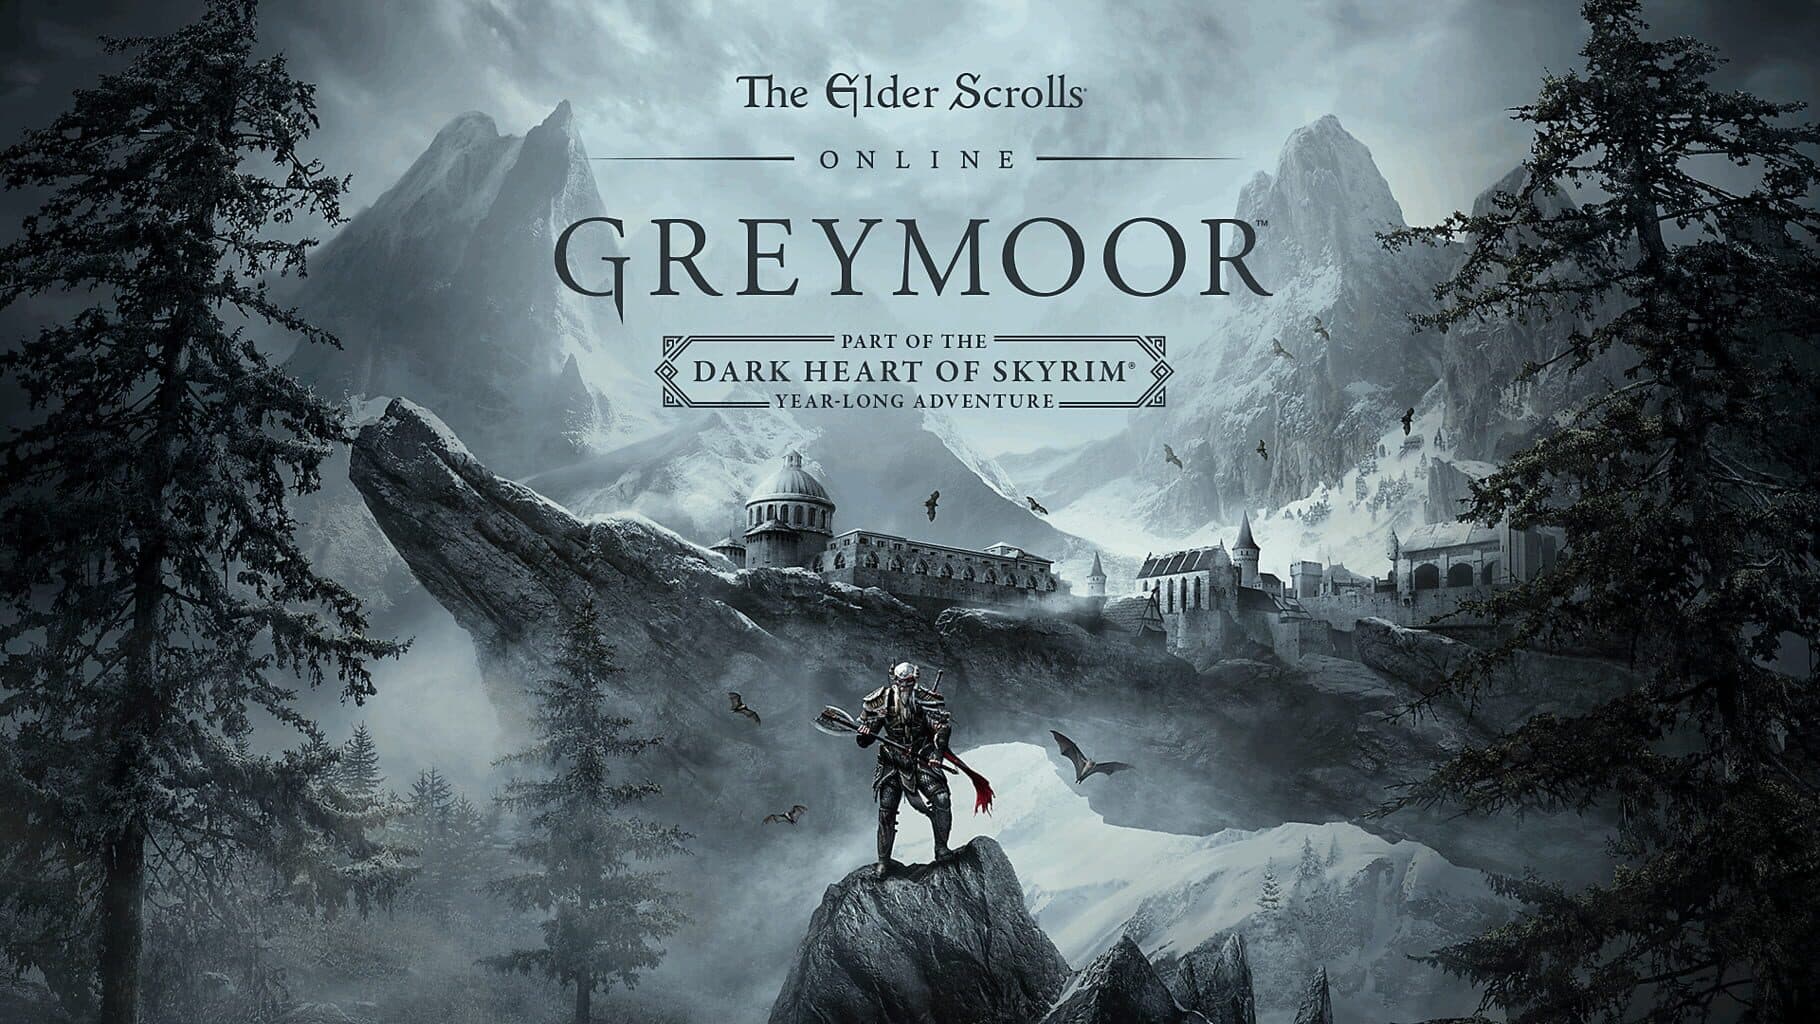 The Elder Scrolls Online: Greymoor Image